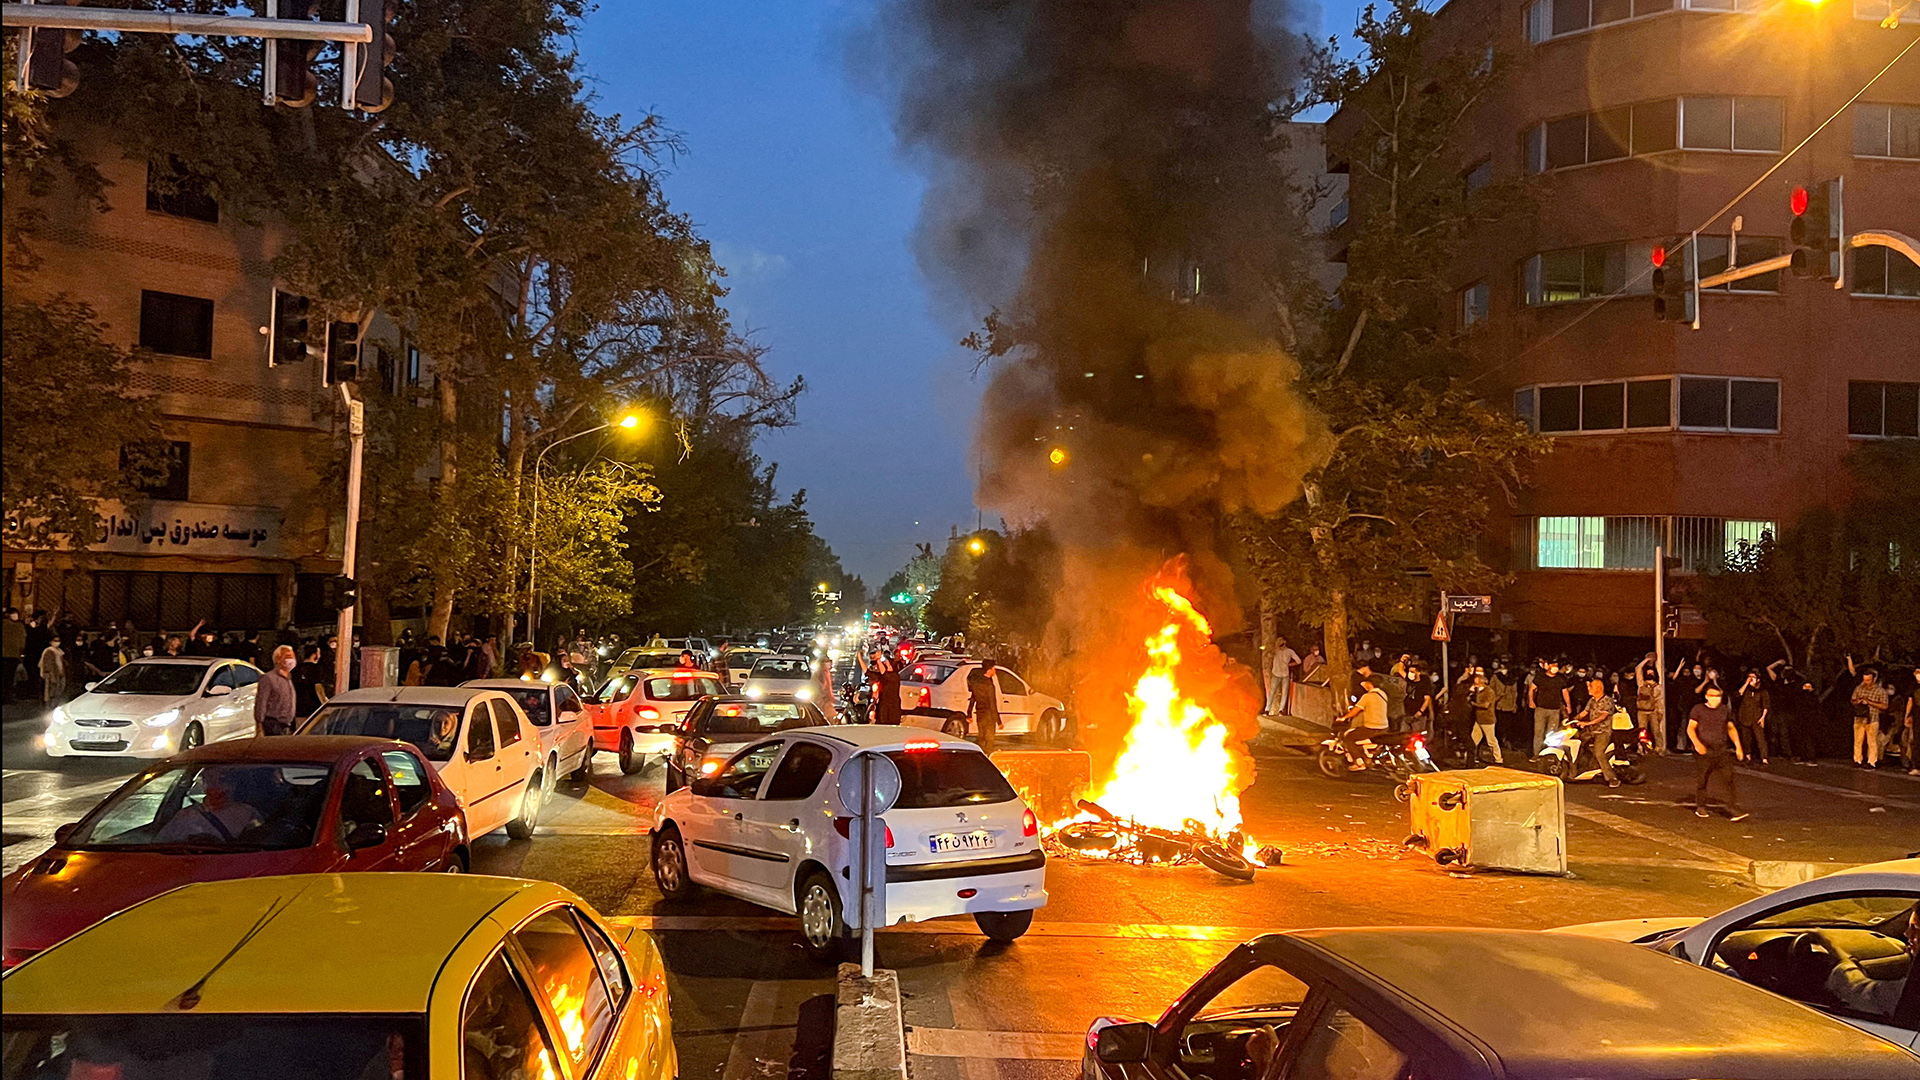 Violenze contro i manifestanti: nuove sanzioni Ue contro l’Iran